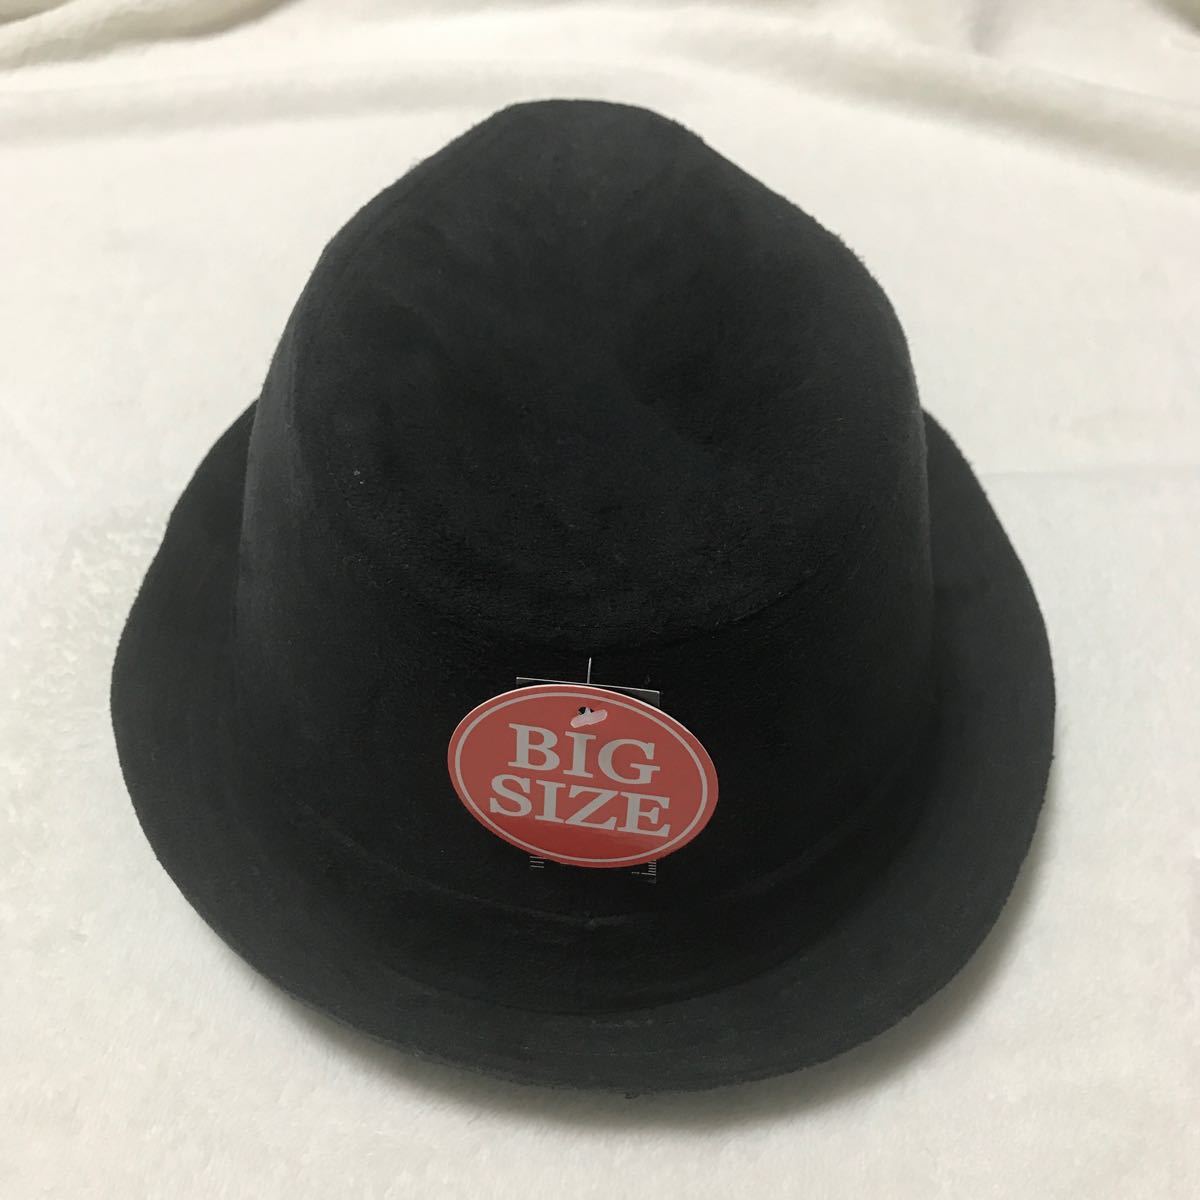  Golf hat felt hat soft hat hat GENERAL SUPPLY men's 61.5cm black 